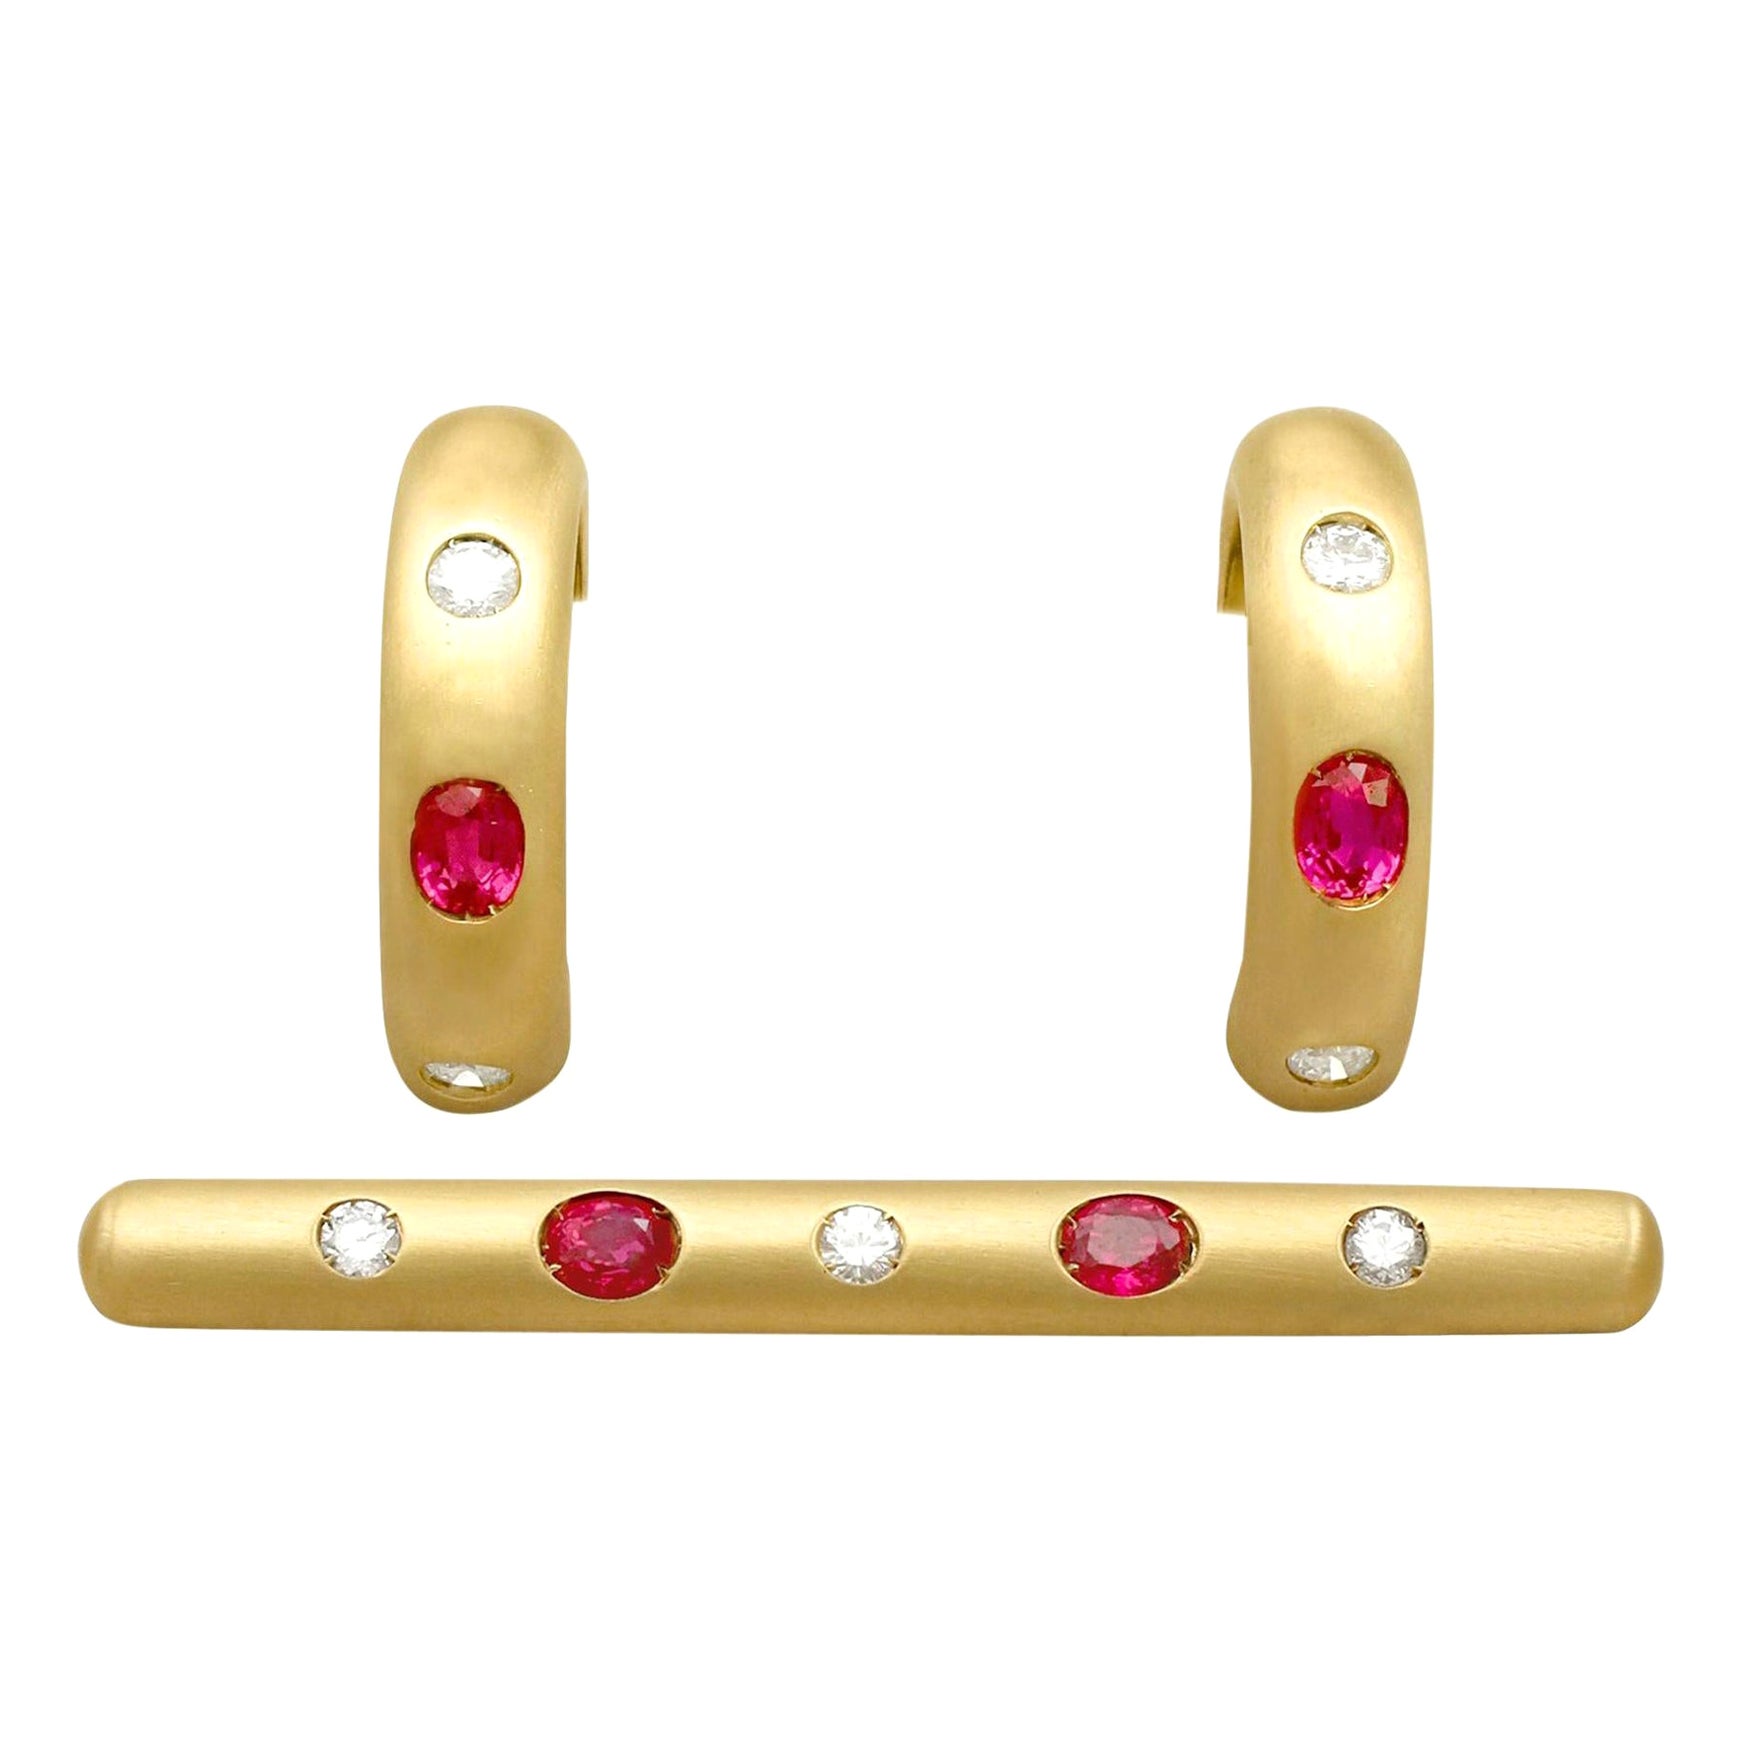 Ohrring und Brosche aus Gelbgold mit 1,05 Karat Rubin und Diamant